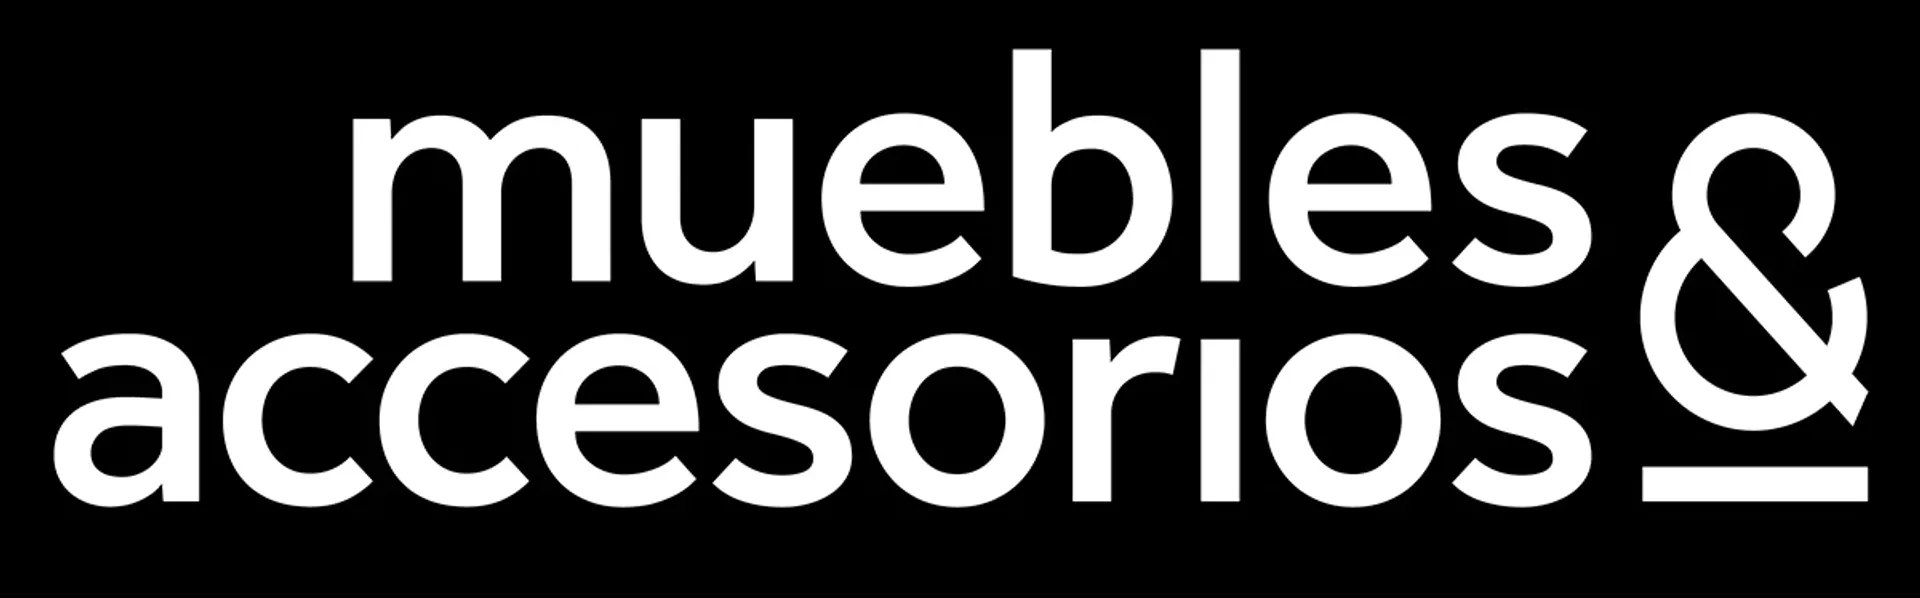 MUEBLES Y ACCESORIOS logo